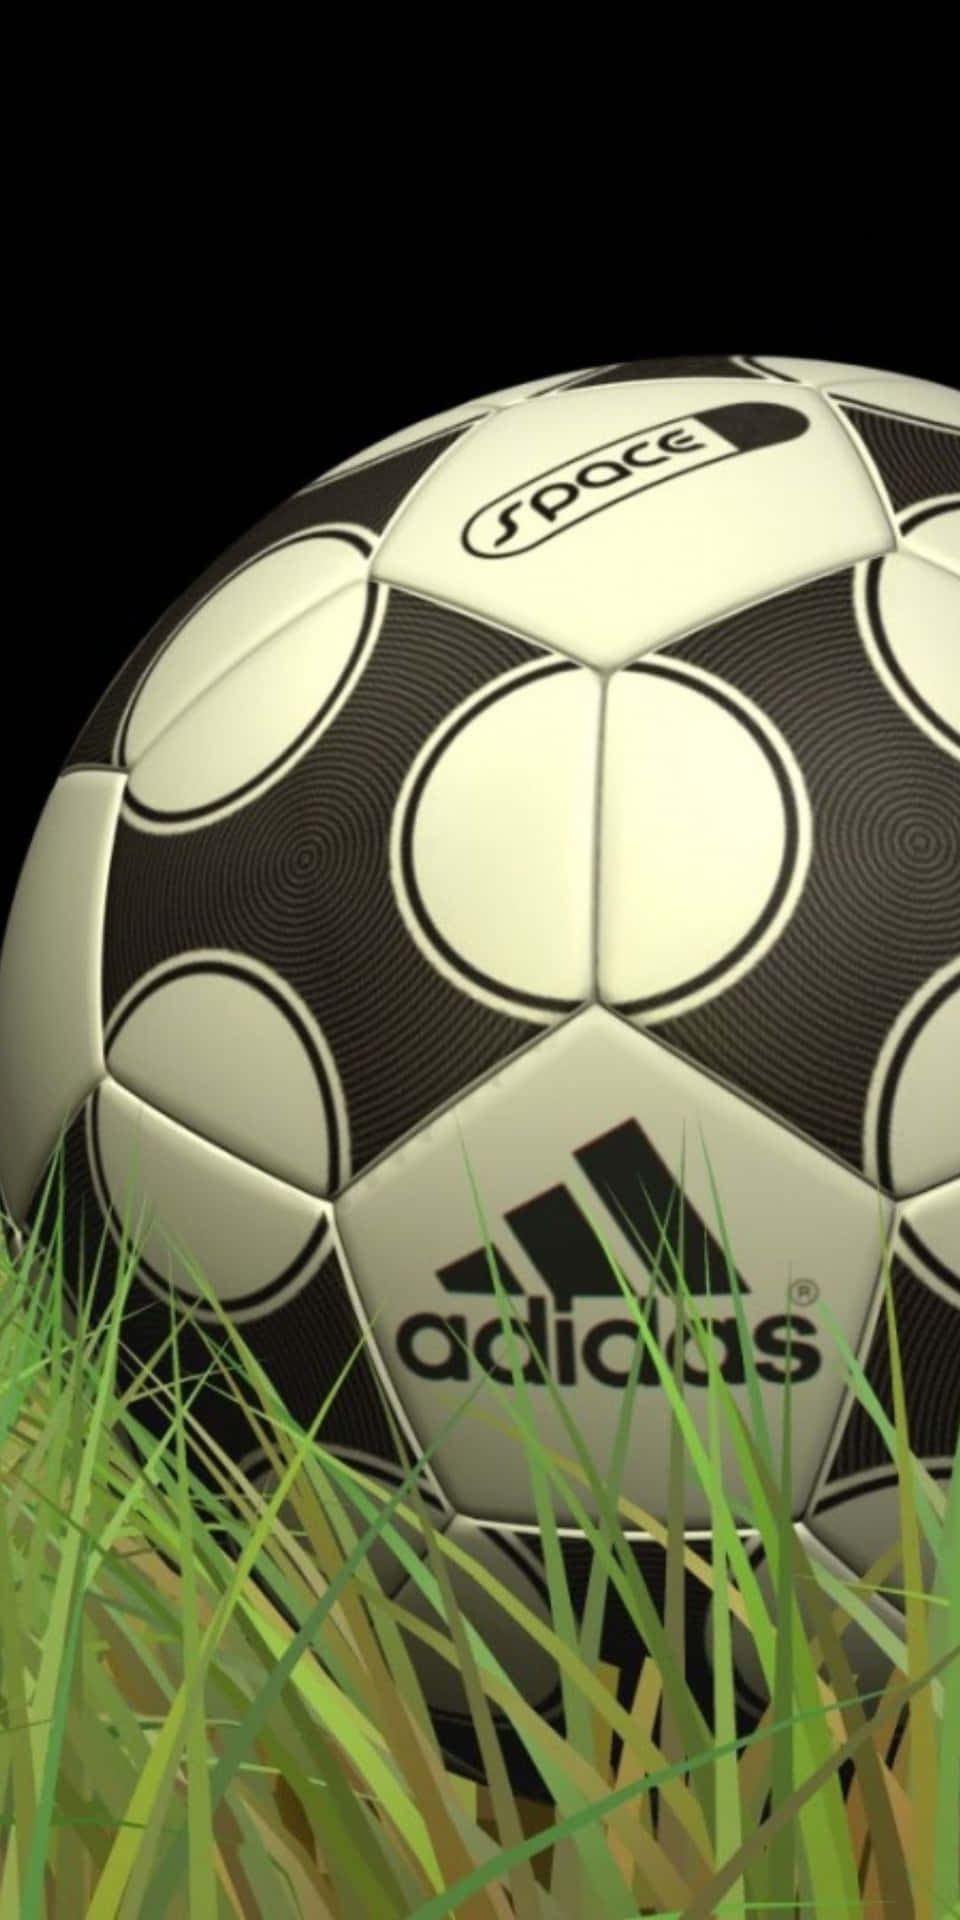 Fondode Pantalla De Fútbol Con El Balón De Soccer Y El Logo De Adidas Para El Pixel 3